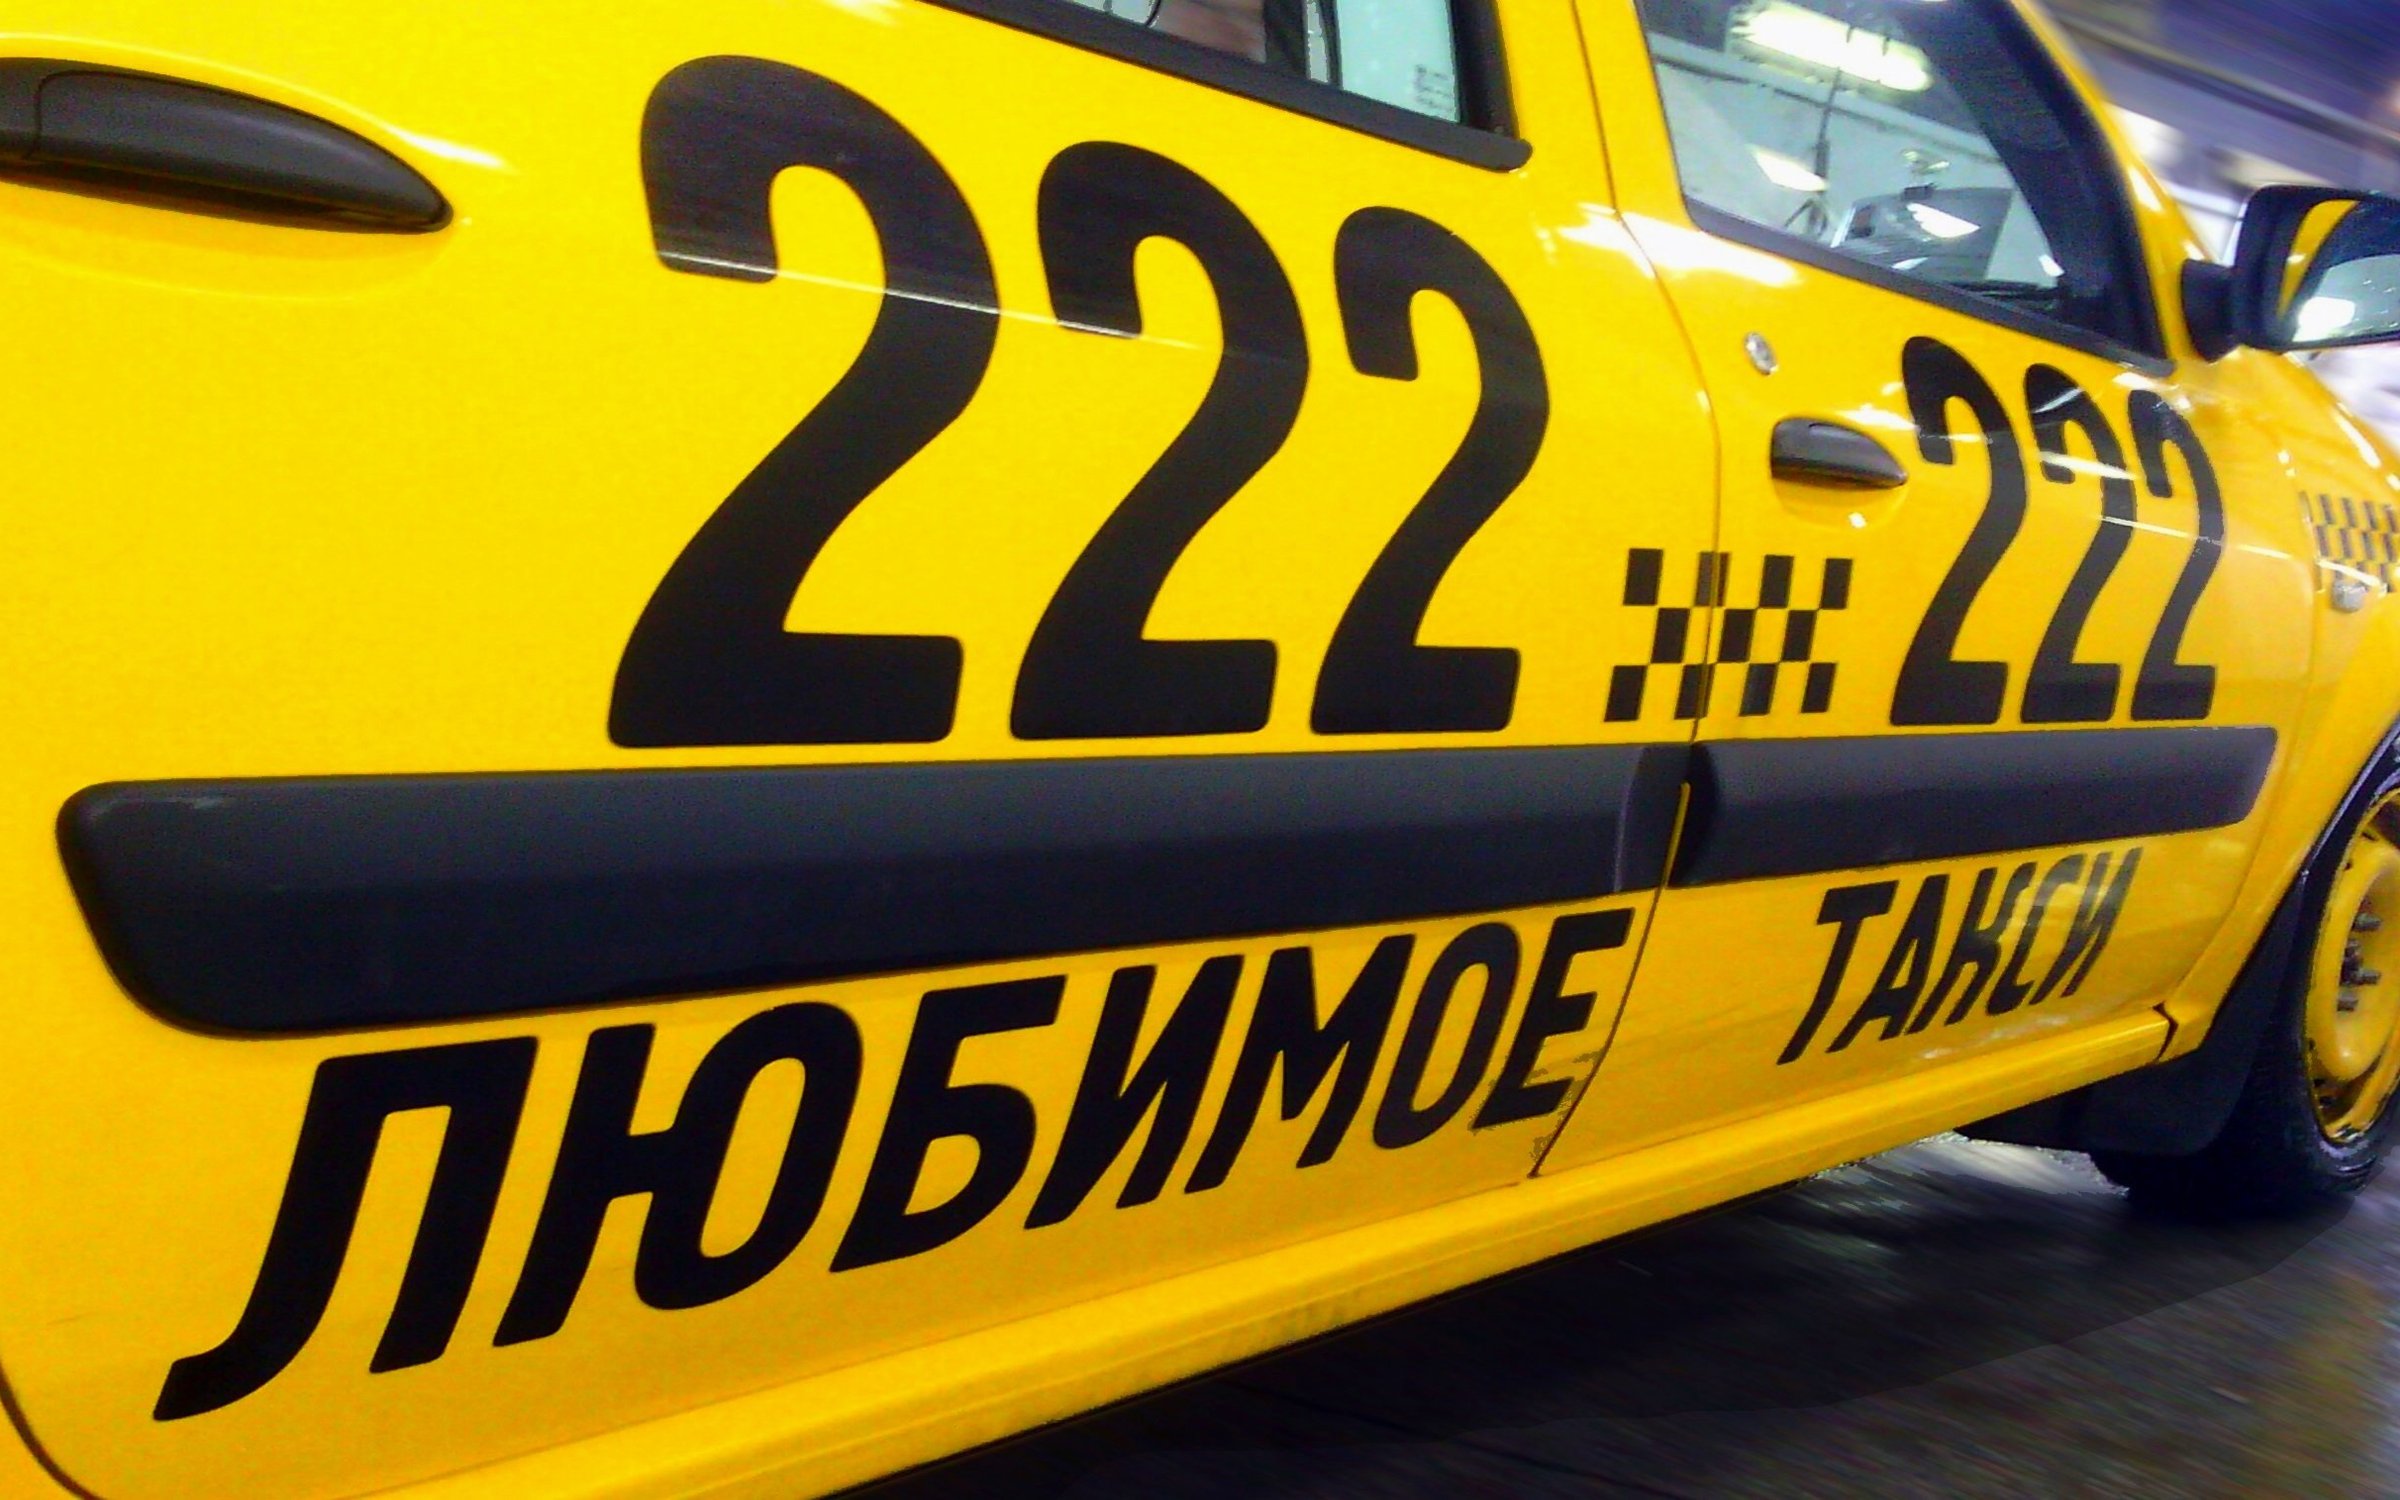 Заказ такси ставрополь телефон. Городское такси реклама. Такси Ставрополь. Таксопарк Ставрополь. Такси 222222.